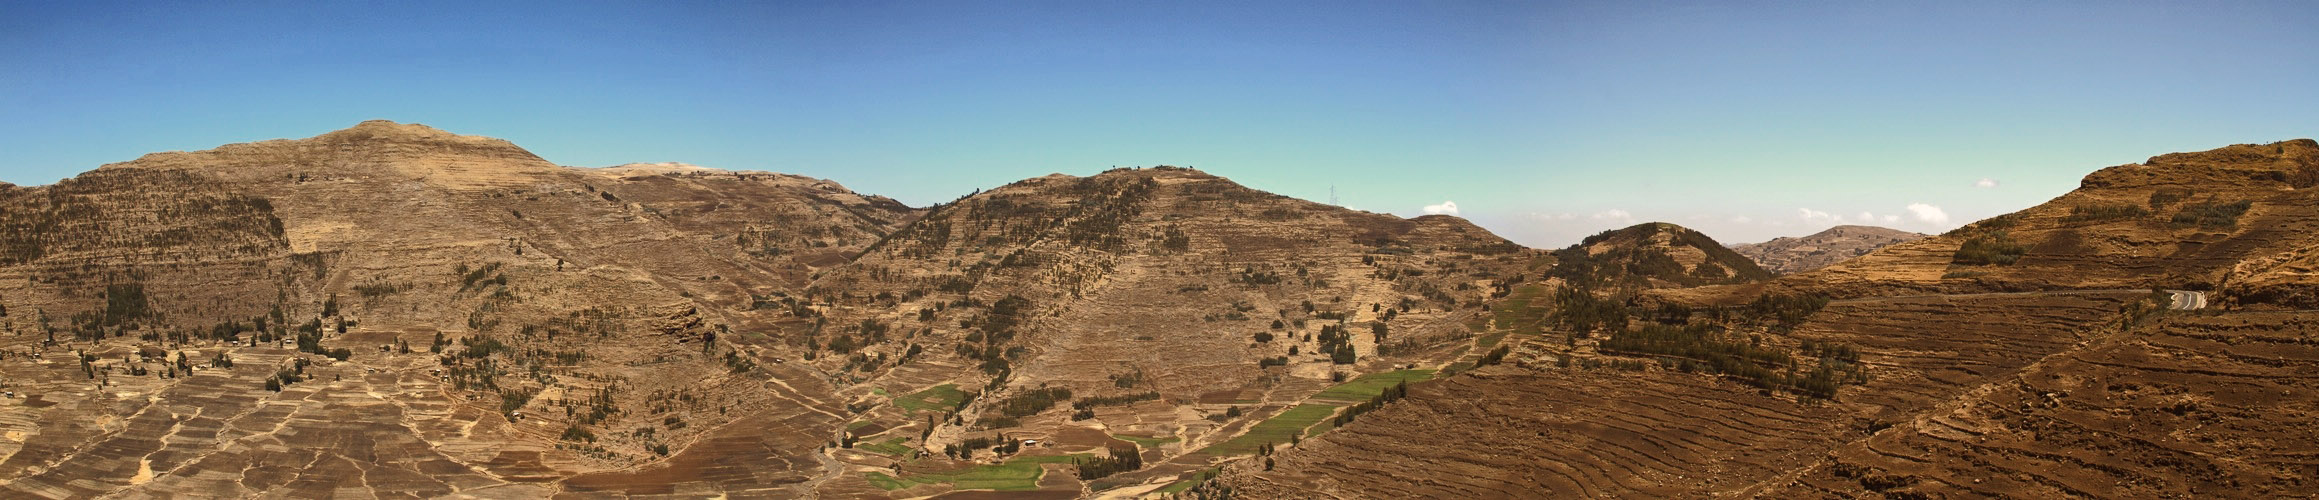 Landschaft aus Ethiopia